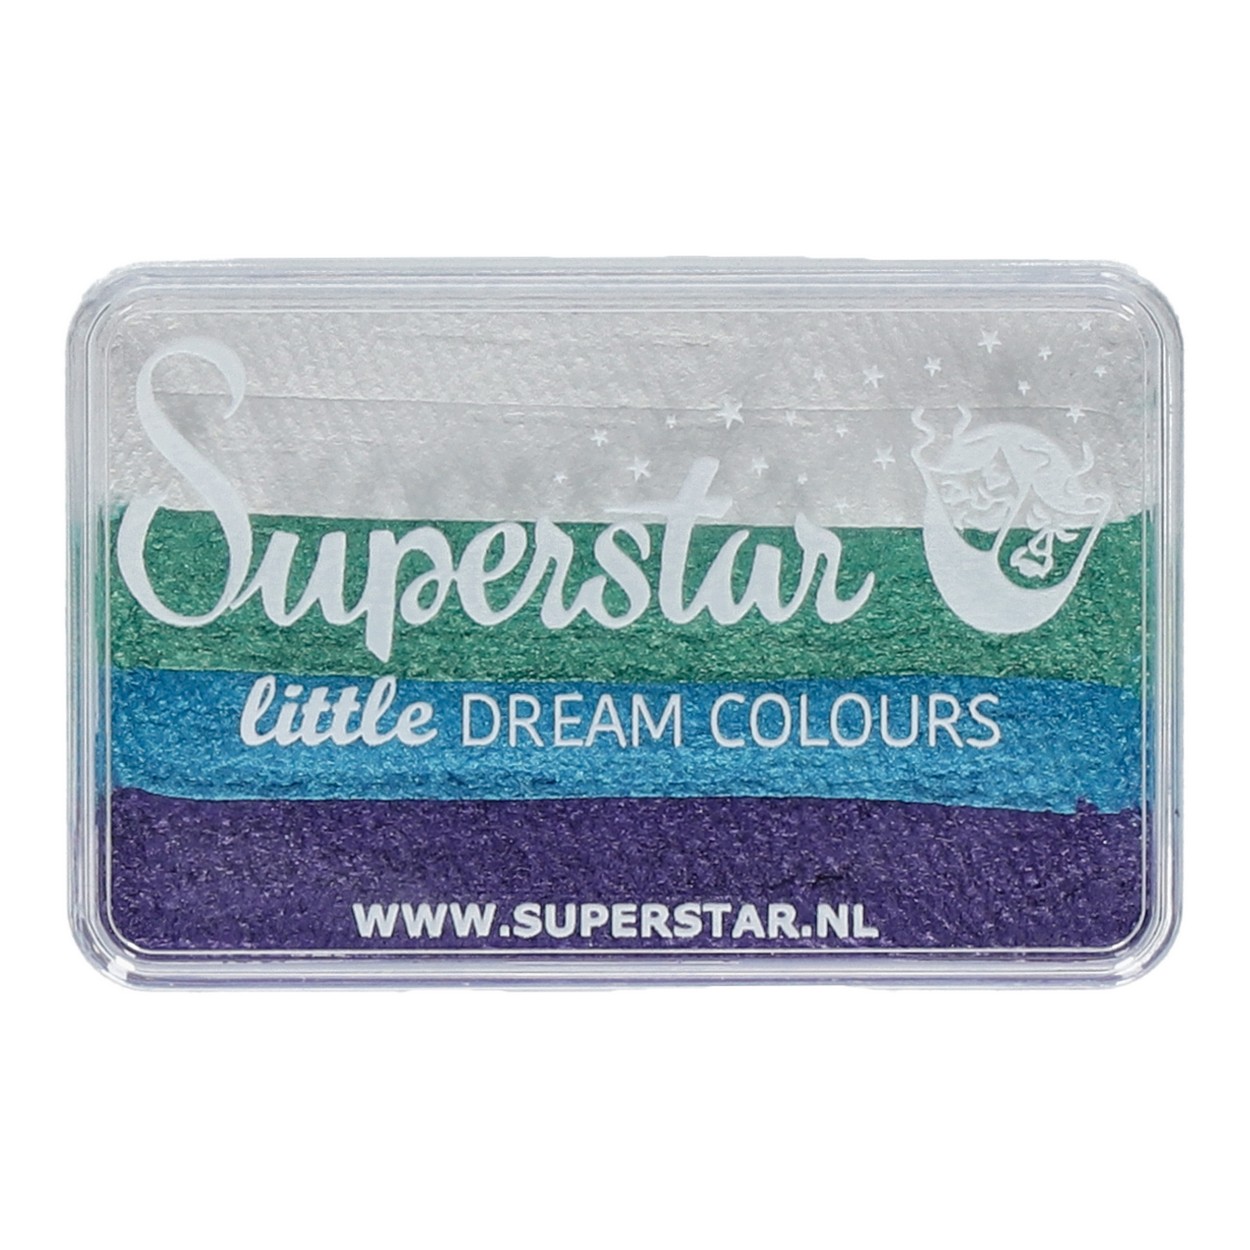 Superstar Little Dream Colours - Little Mermaid, 30 gram